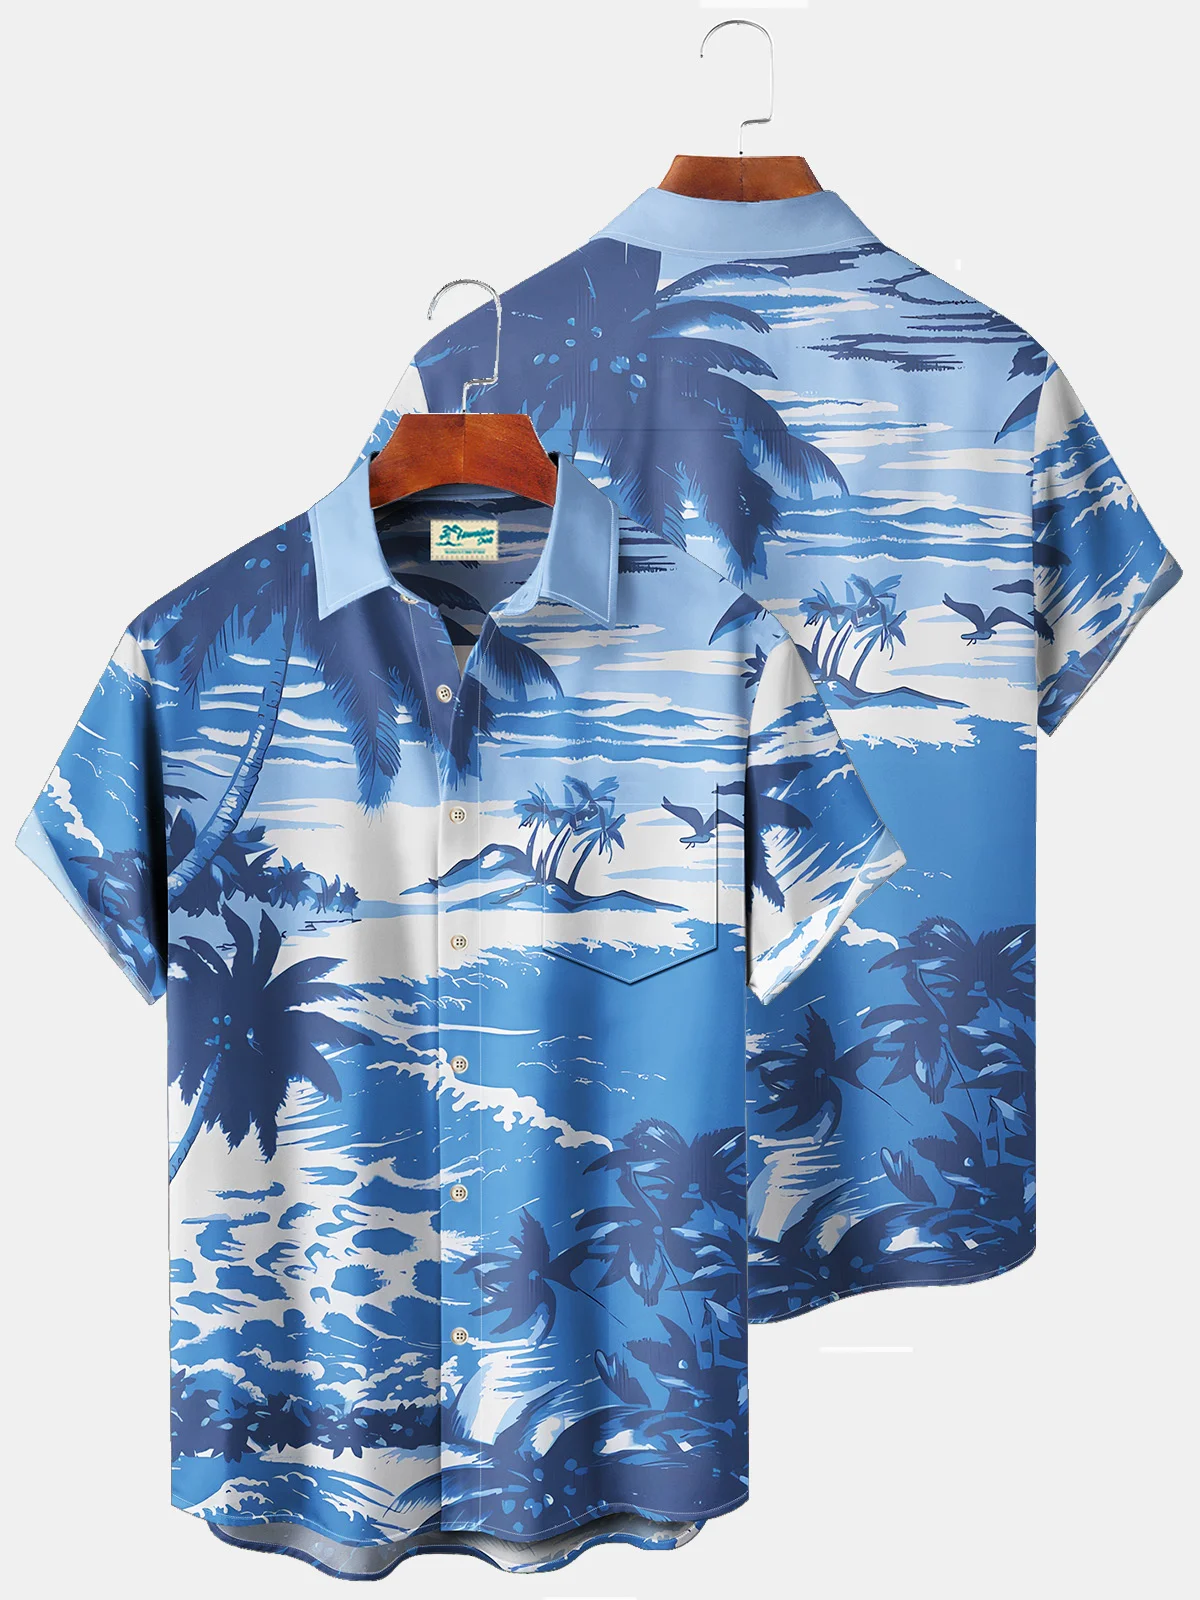 Royaura Beach Vacation Men's Blue Hawaiian Shirts Coconut Tree Stretch Plus Size Aloha Camp Pocket Shirts